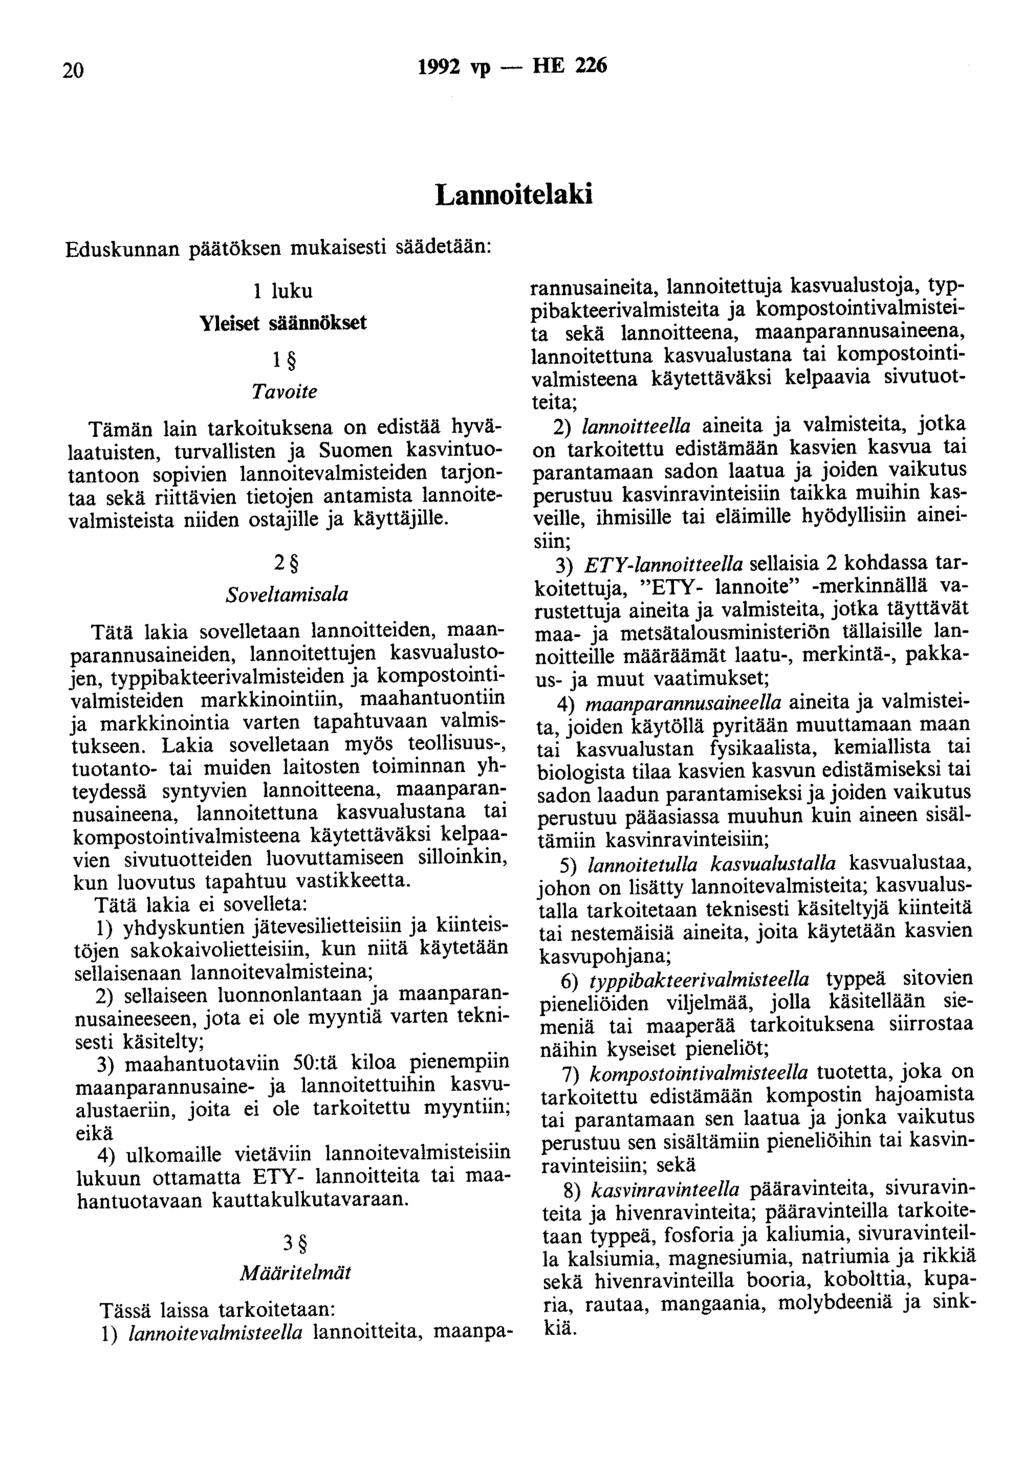 20 1992 vp - HE 226 Eduskunnan päätöksen mukaisesti säädetään: Lannoitelaki 1 luku Yleiset säännökset 1 Tavoite Tämän lain tarkoituksena on edistää hyvälaatuisten, turvallisten ja Suomen